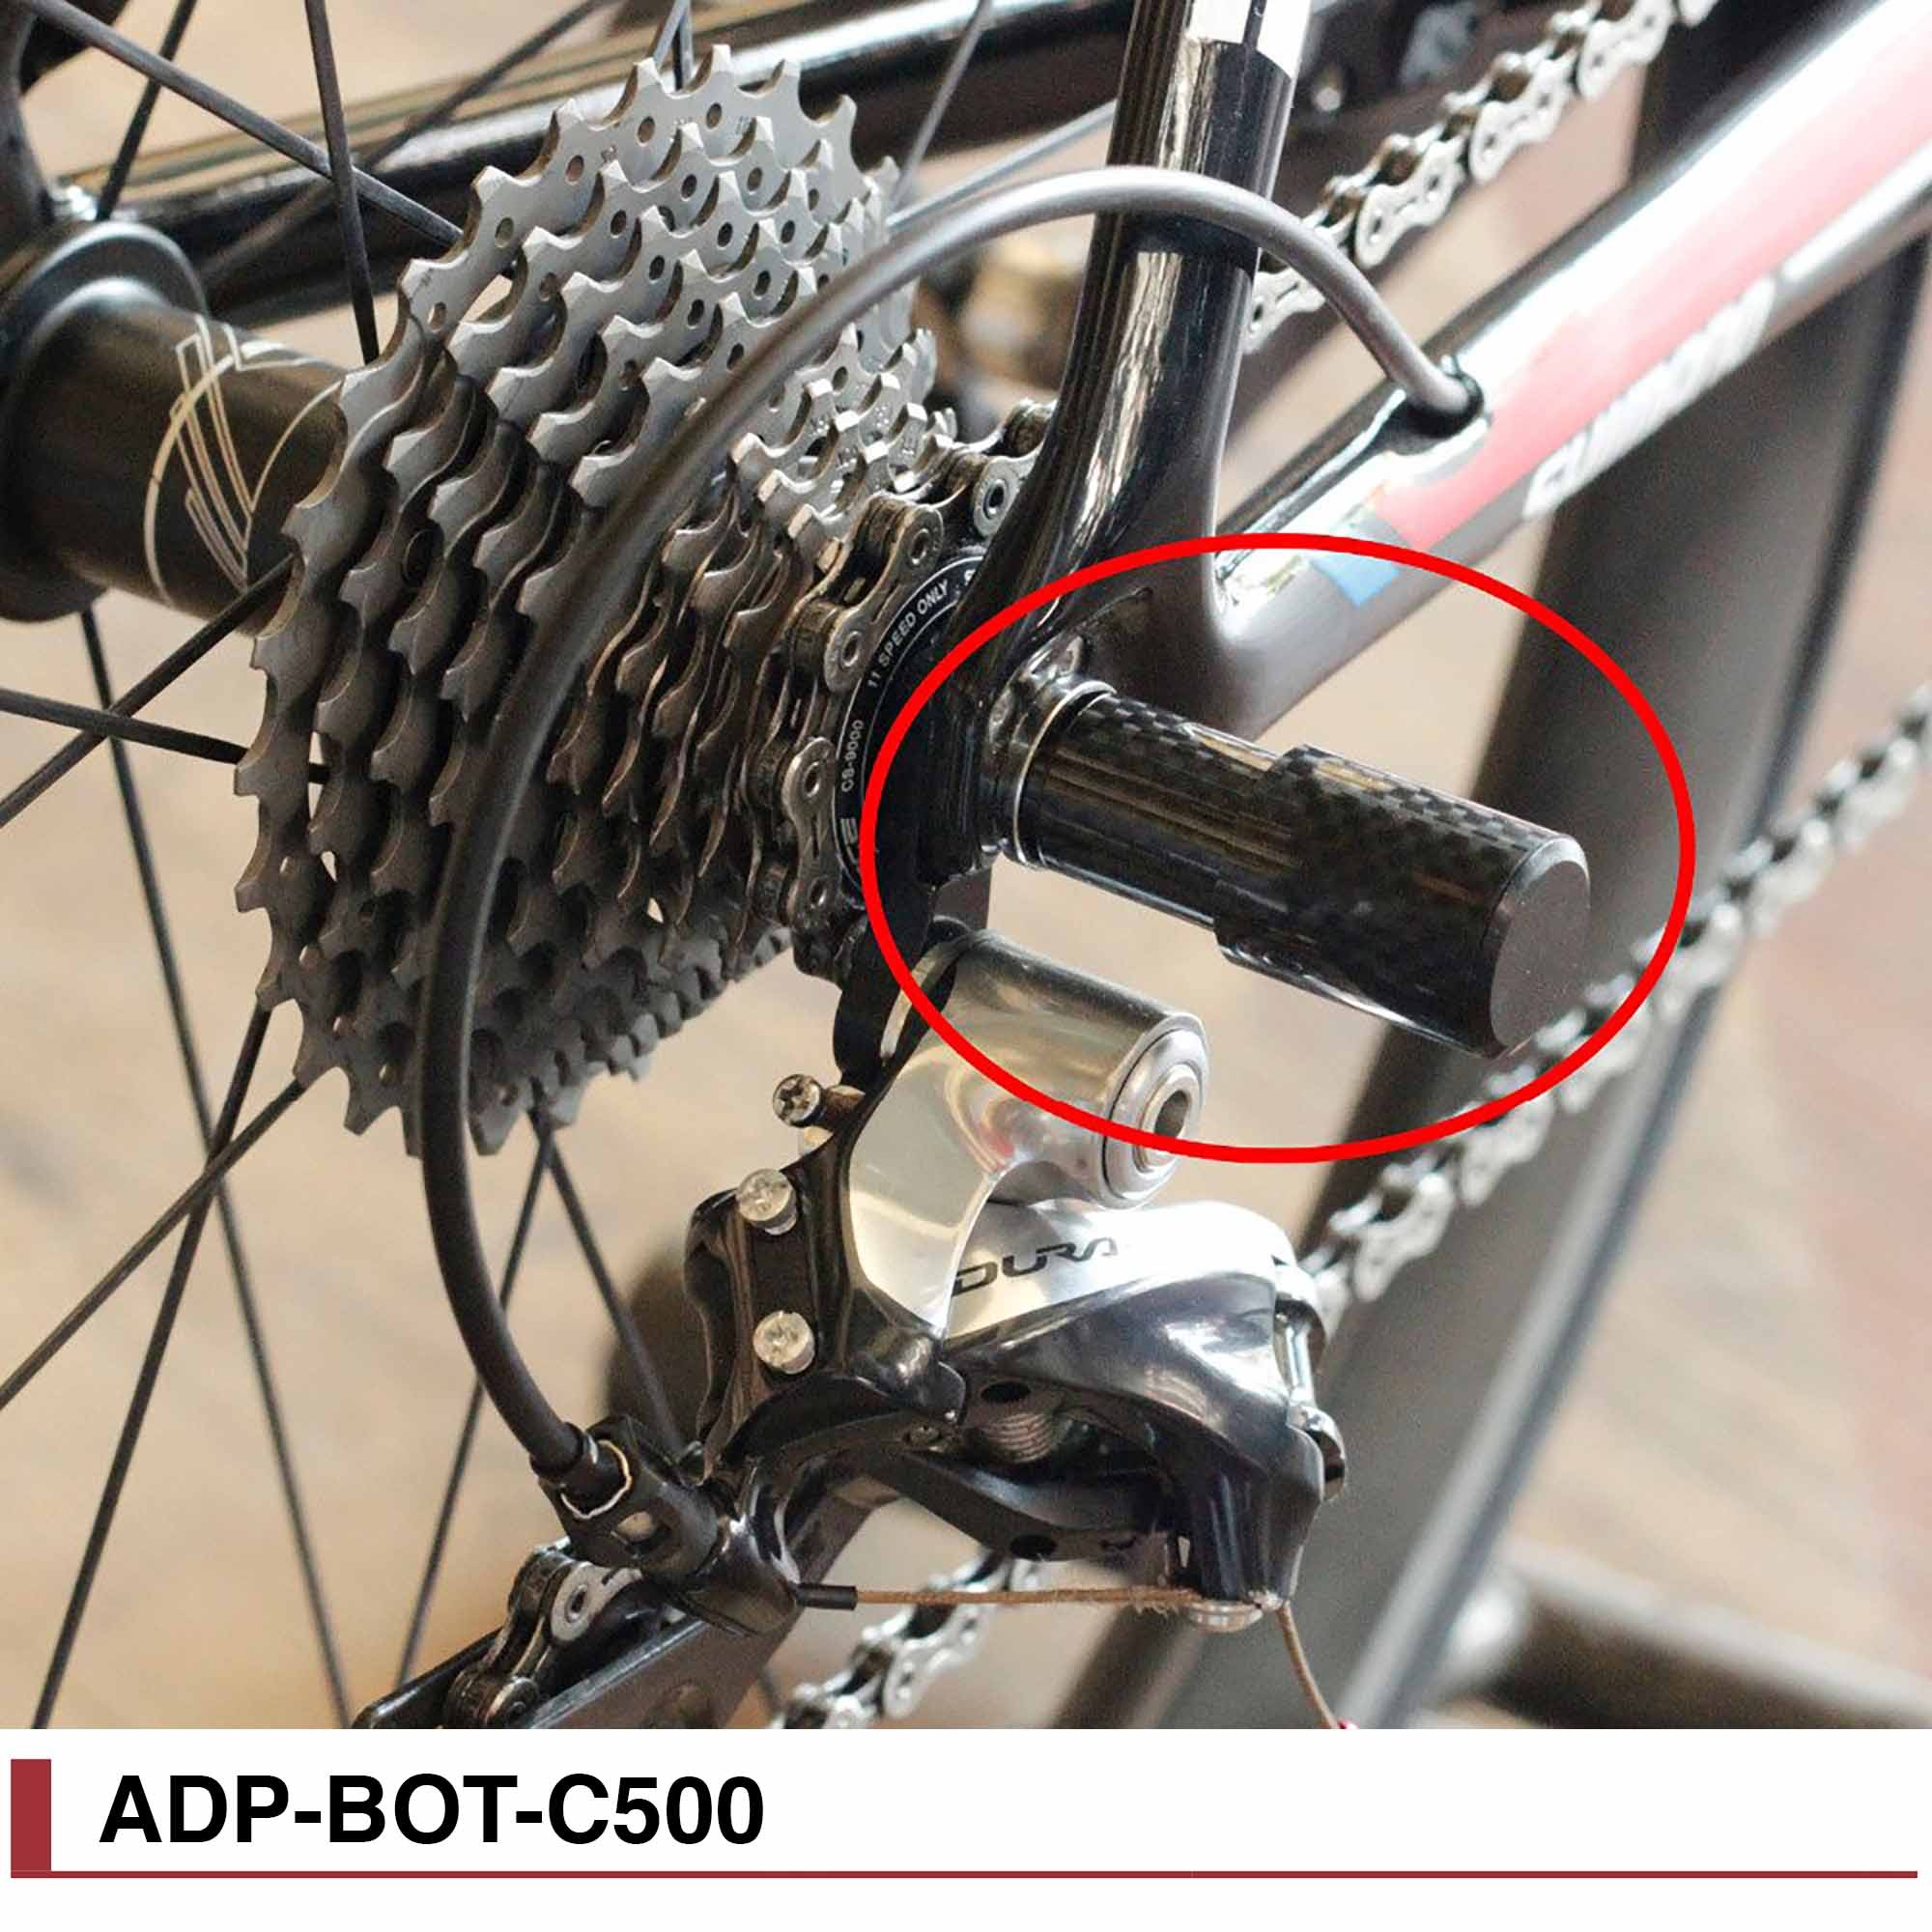 Как снять задние скорости на велосипеде. Защита заднего переключателя велосипеда aspect. Защита переключателя скоростей велосипеда Stark. Защита заднего переключателя карбон. Trek защита переключателя.